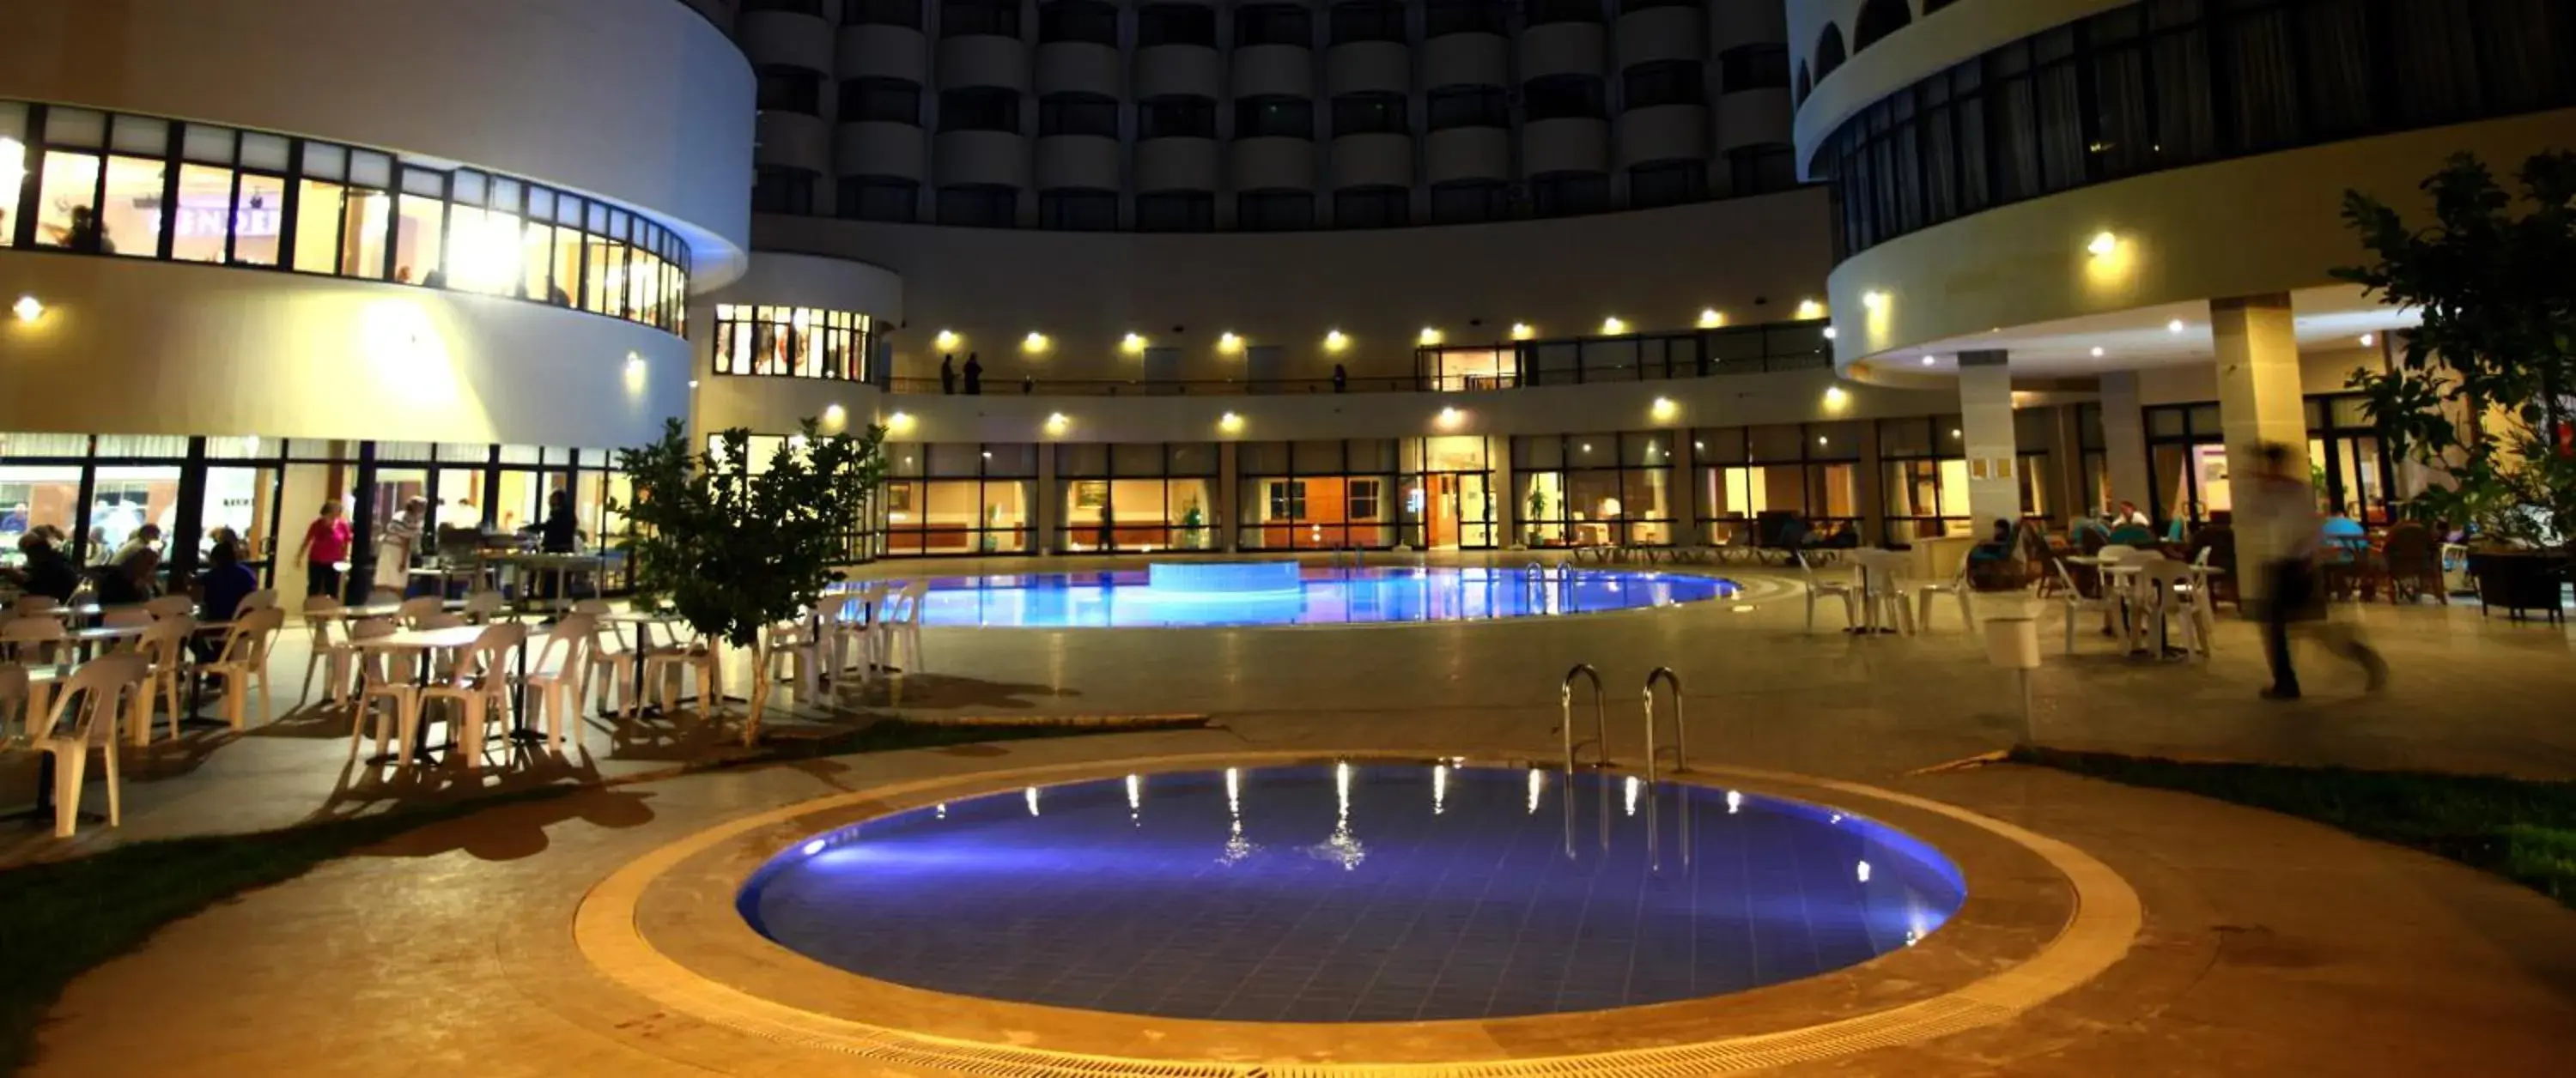 Swimming Pool in Cender Hotel